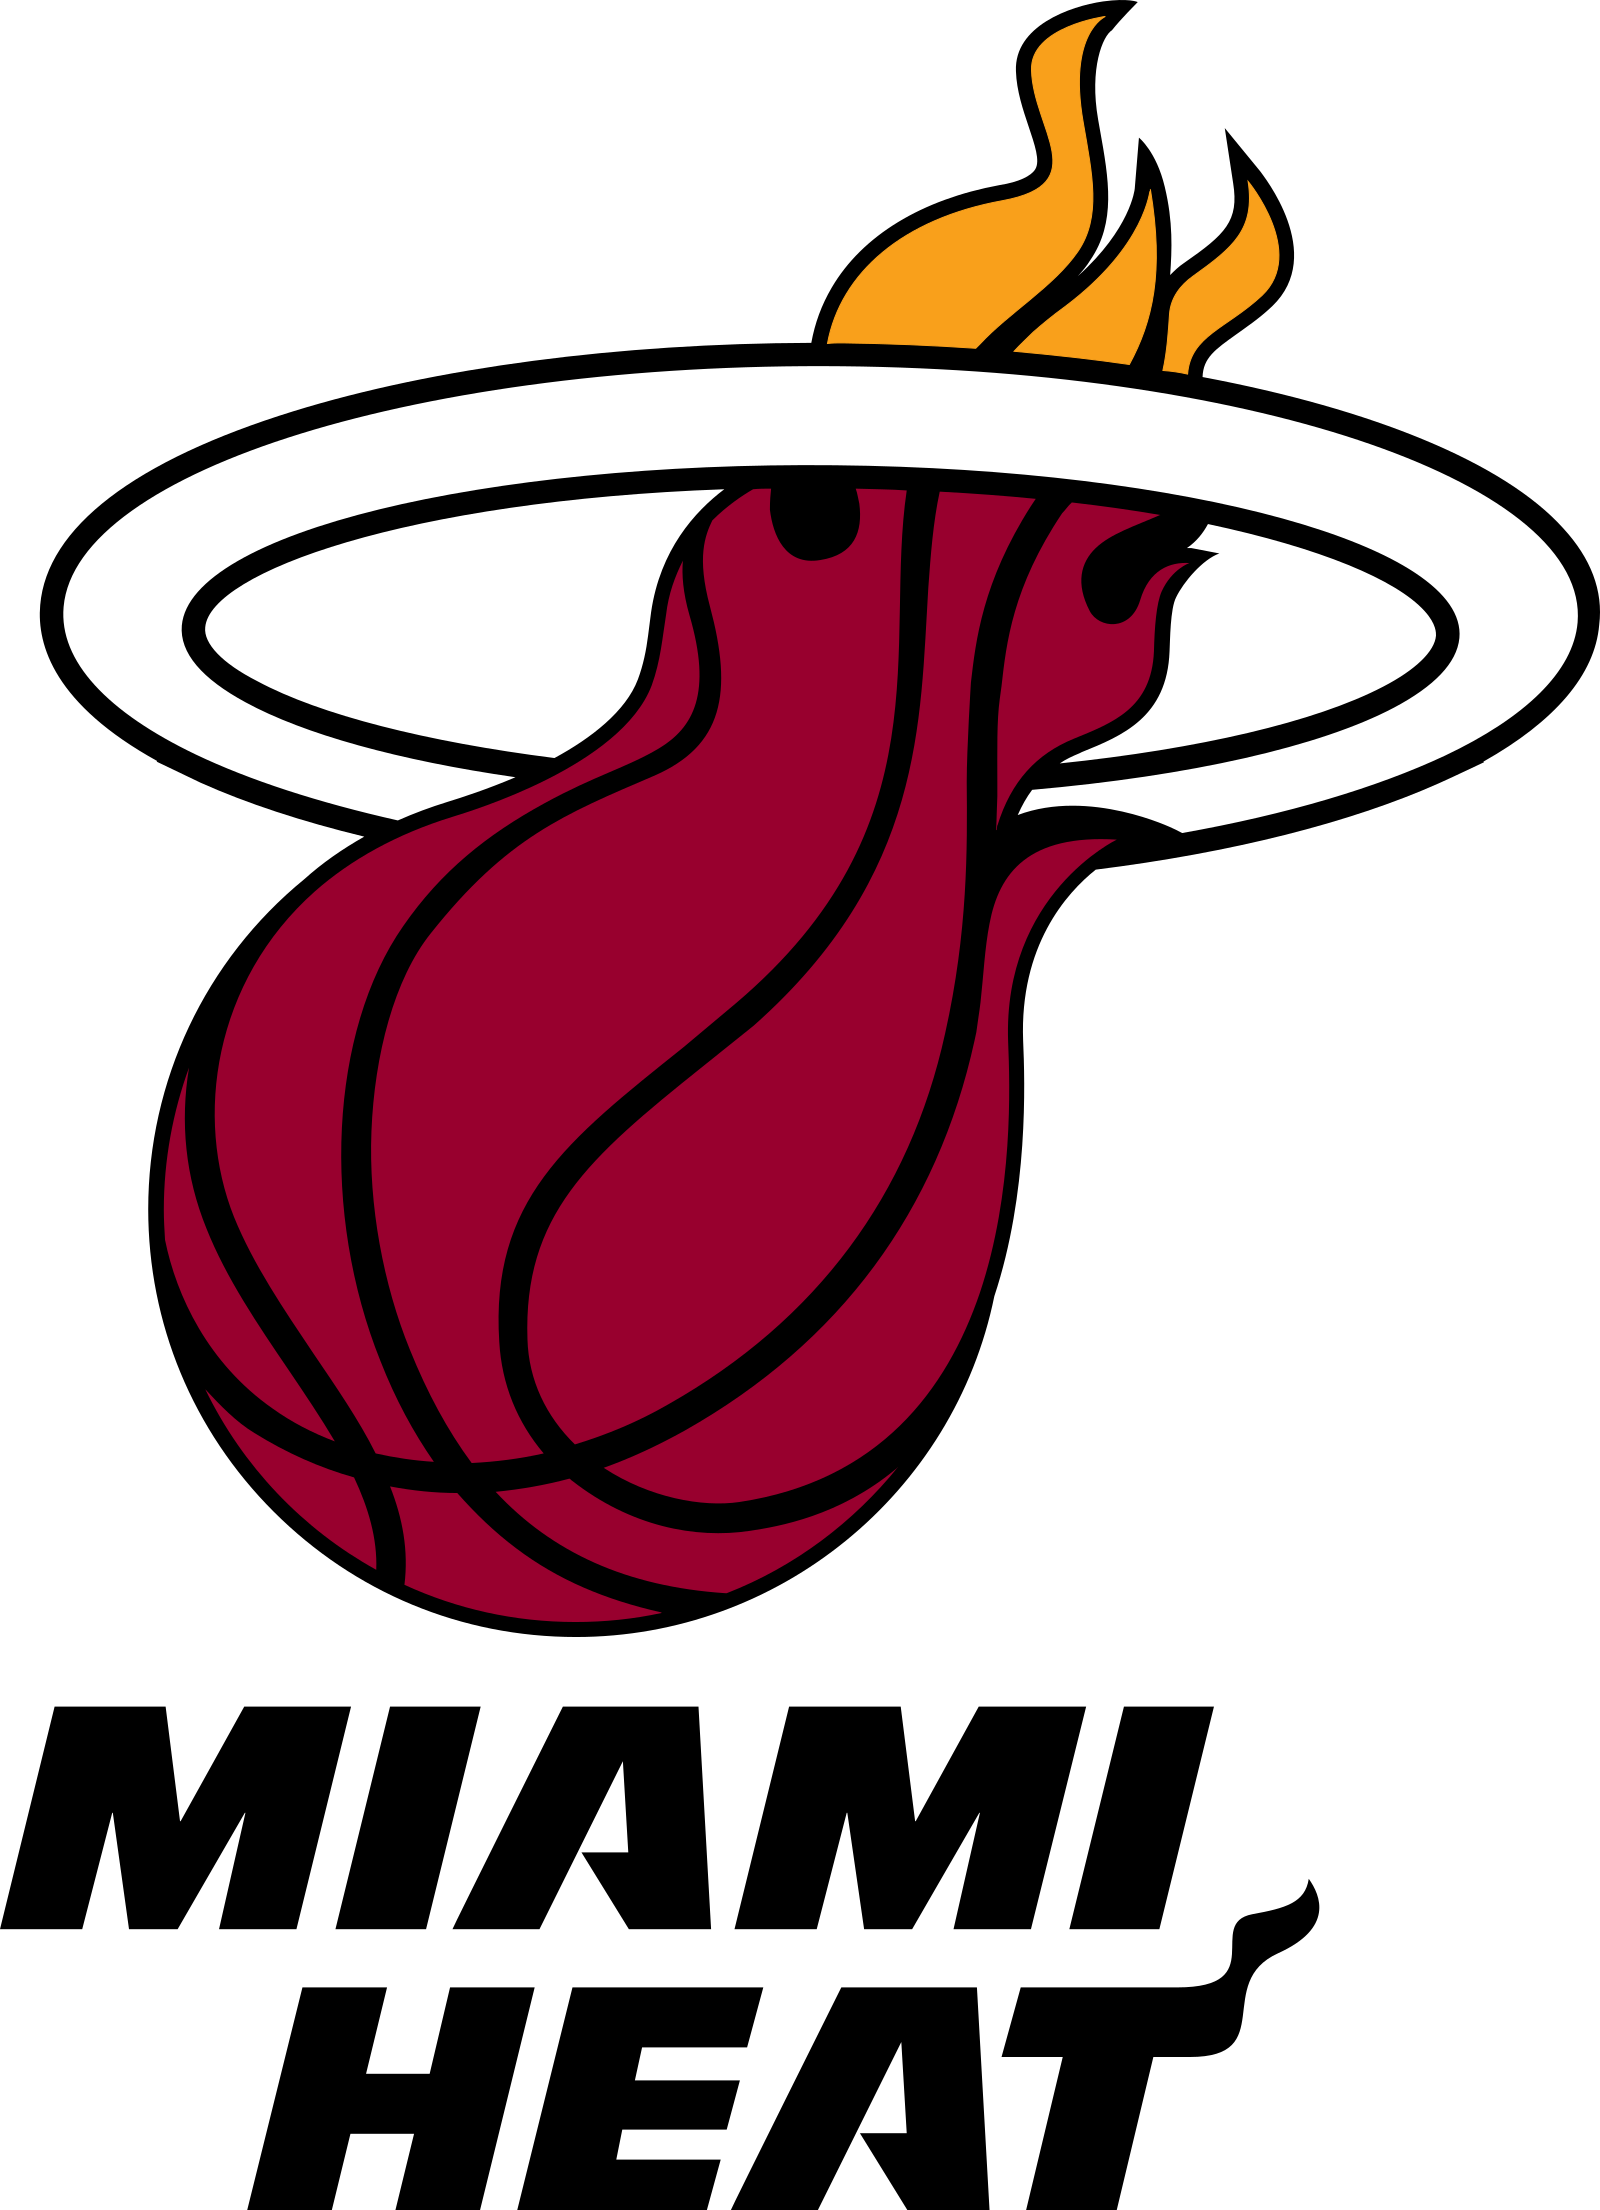 miami heat logo 2 - Miami Heat Logo